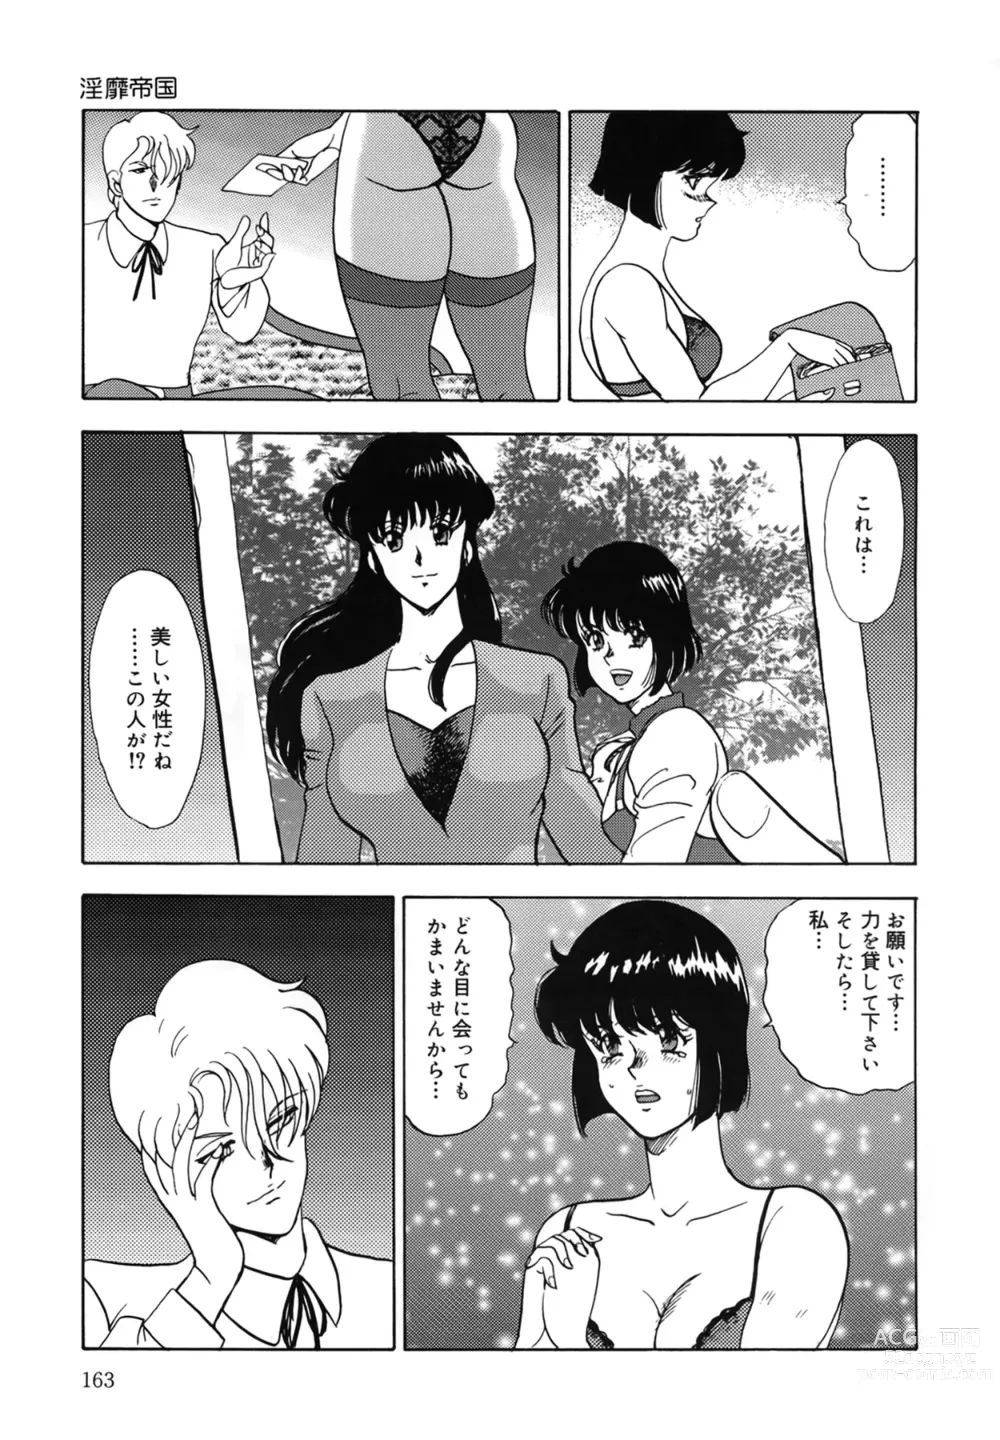 Page 163 of manga Inbi Teikoku